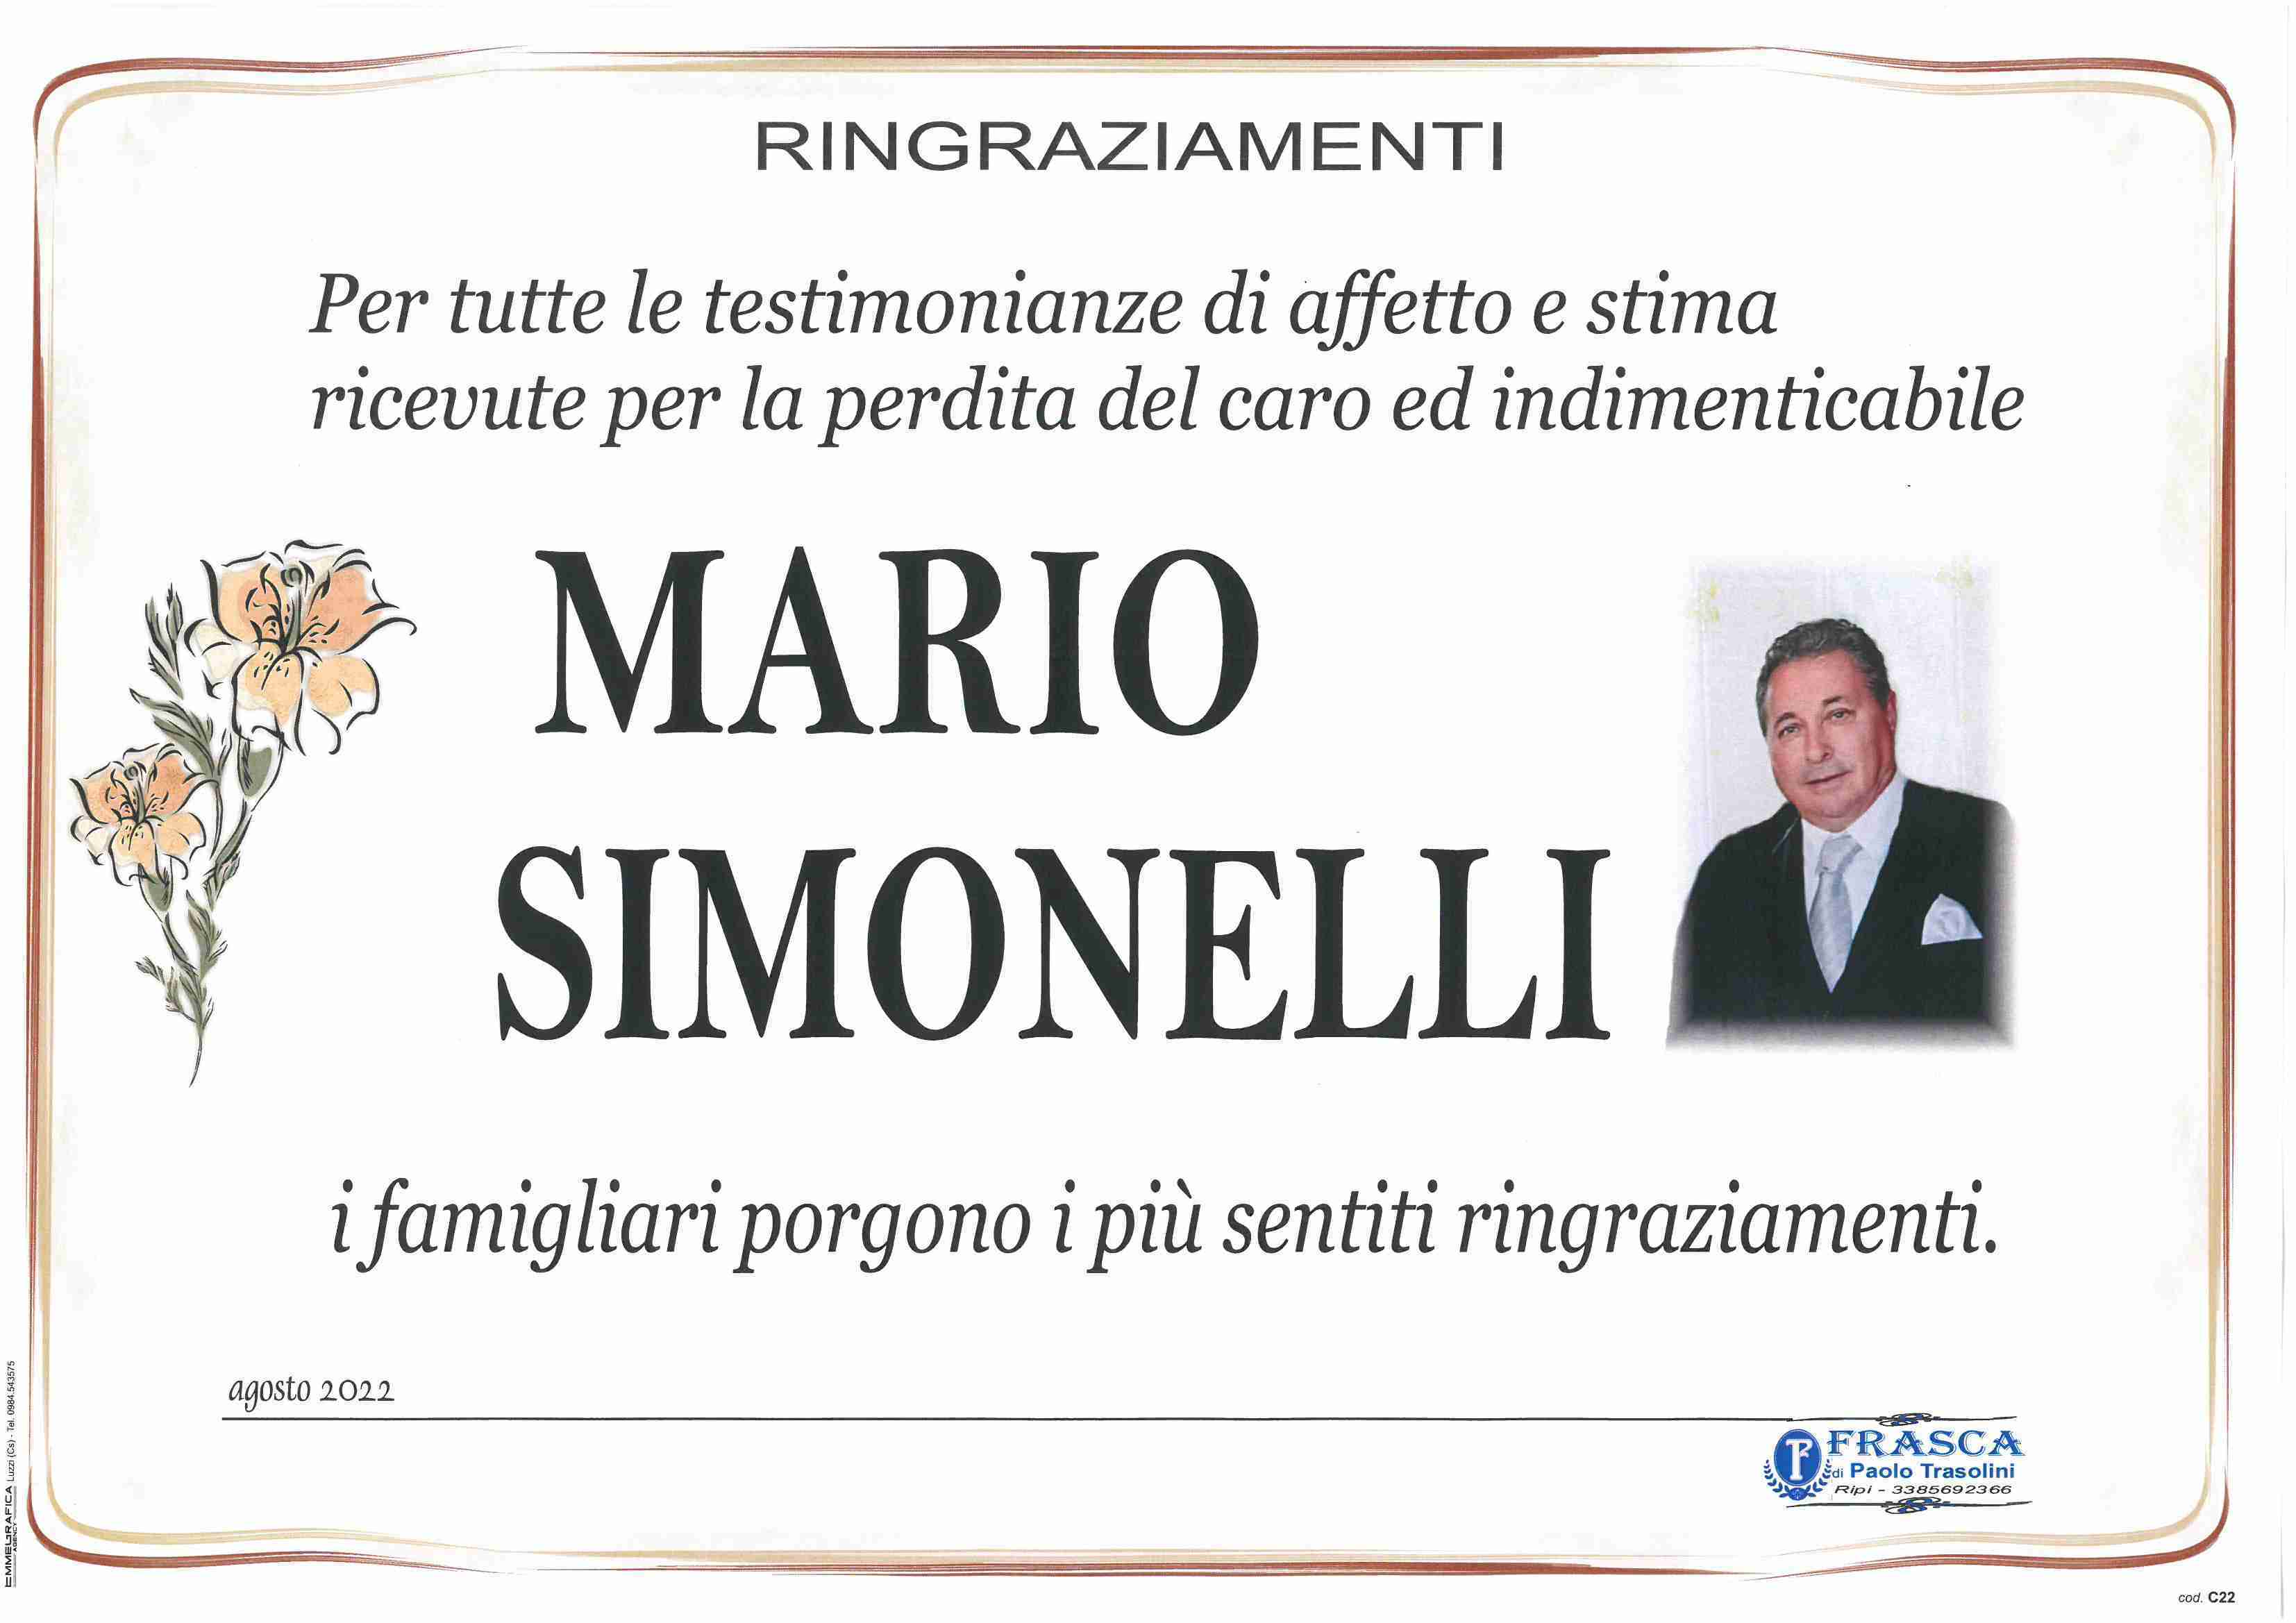 Mario Simonelli